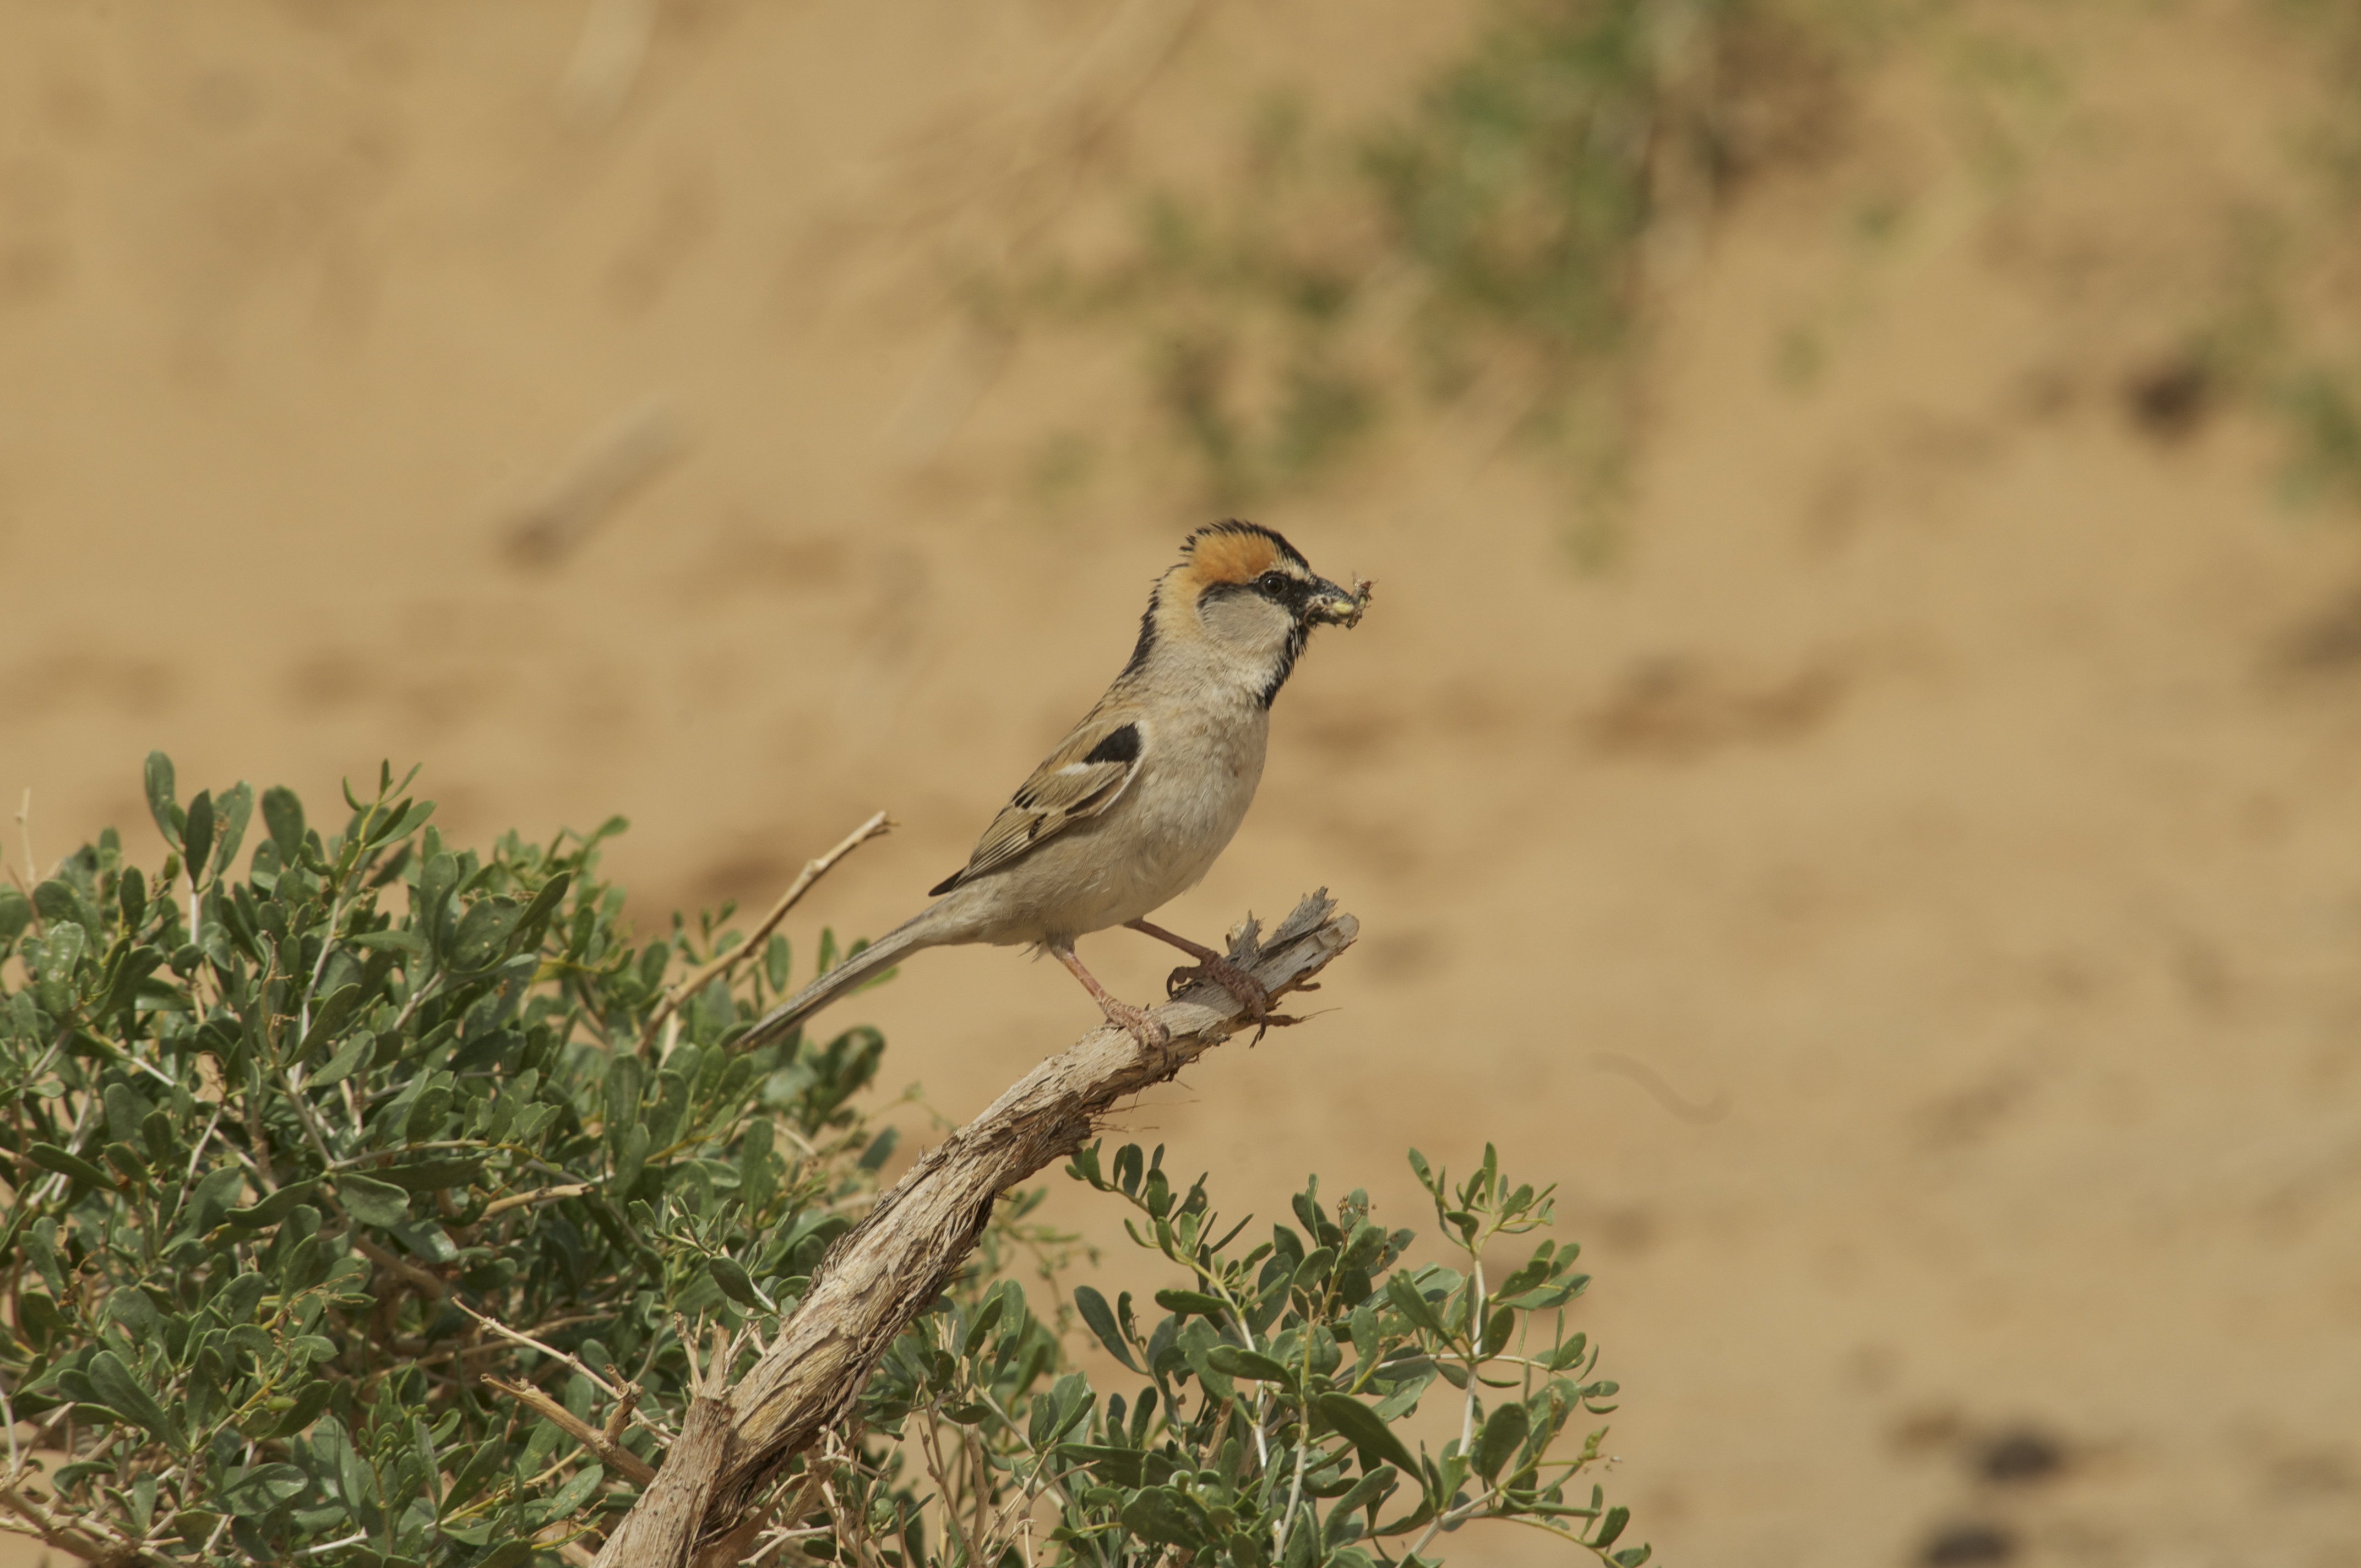 Saxaul Sparrow - Passer ammodendri